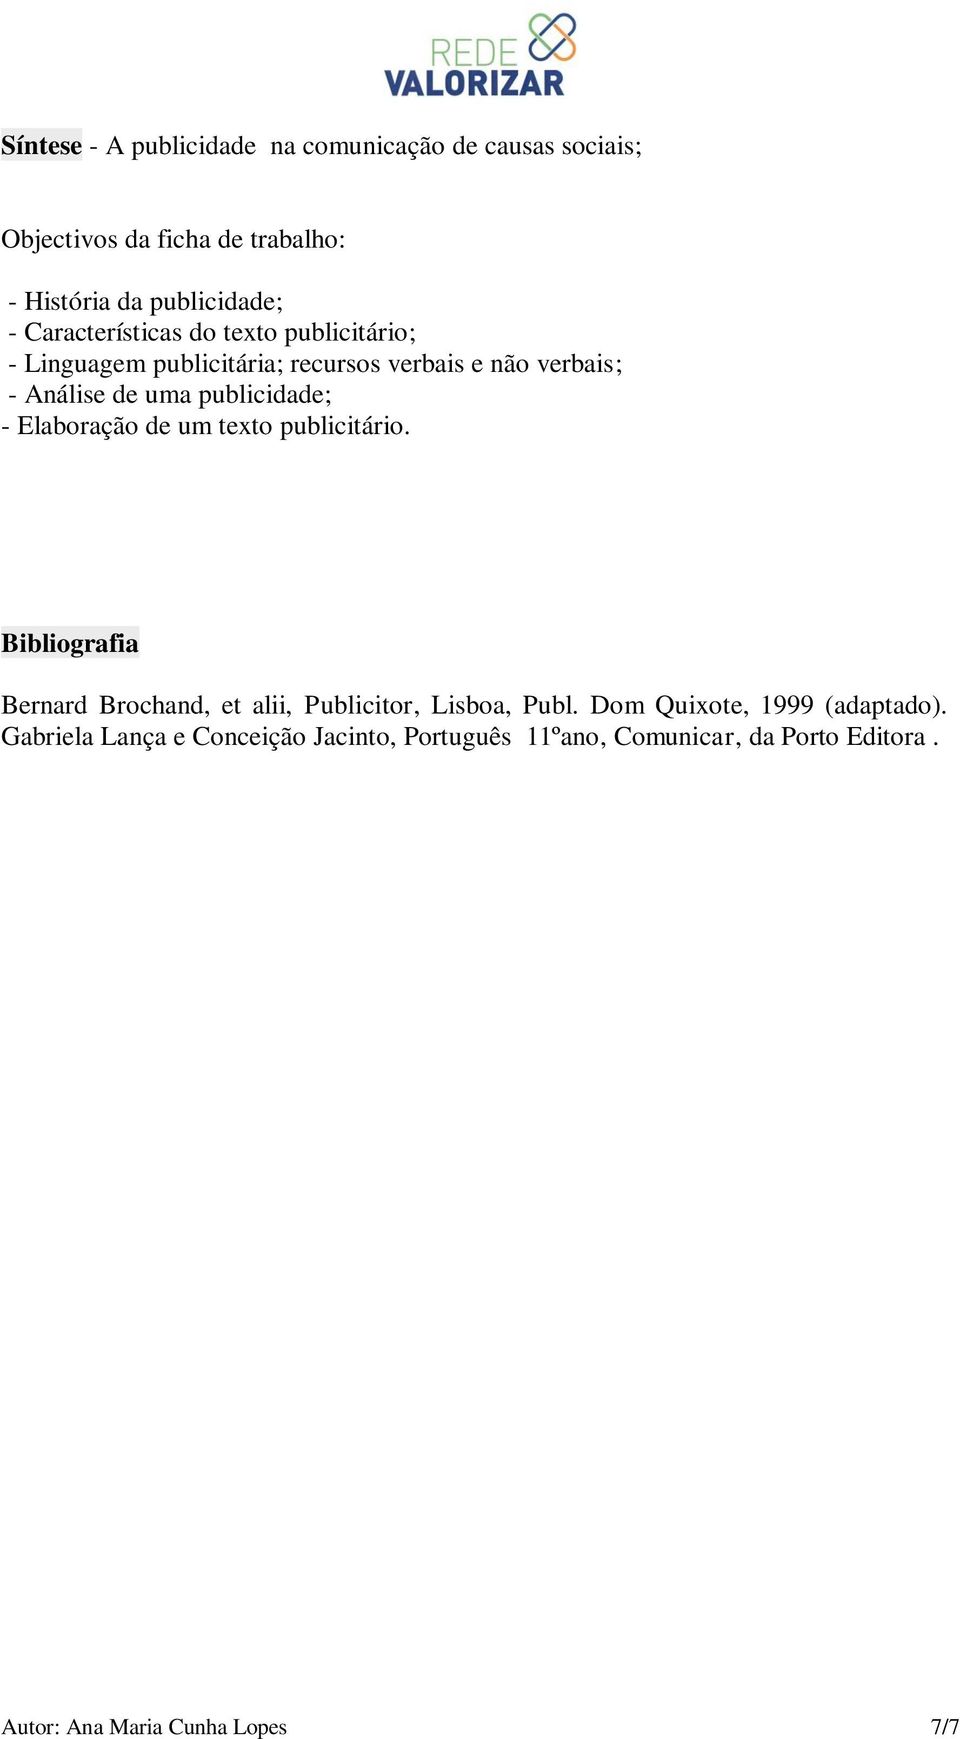 publicidade; - Elaboração de um texto publicitário. Bibliografia Bernard Brochand, et alii, Publicitor, Lisboa, Publ.